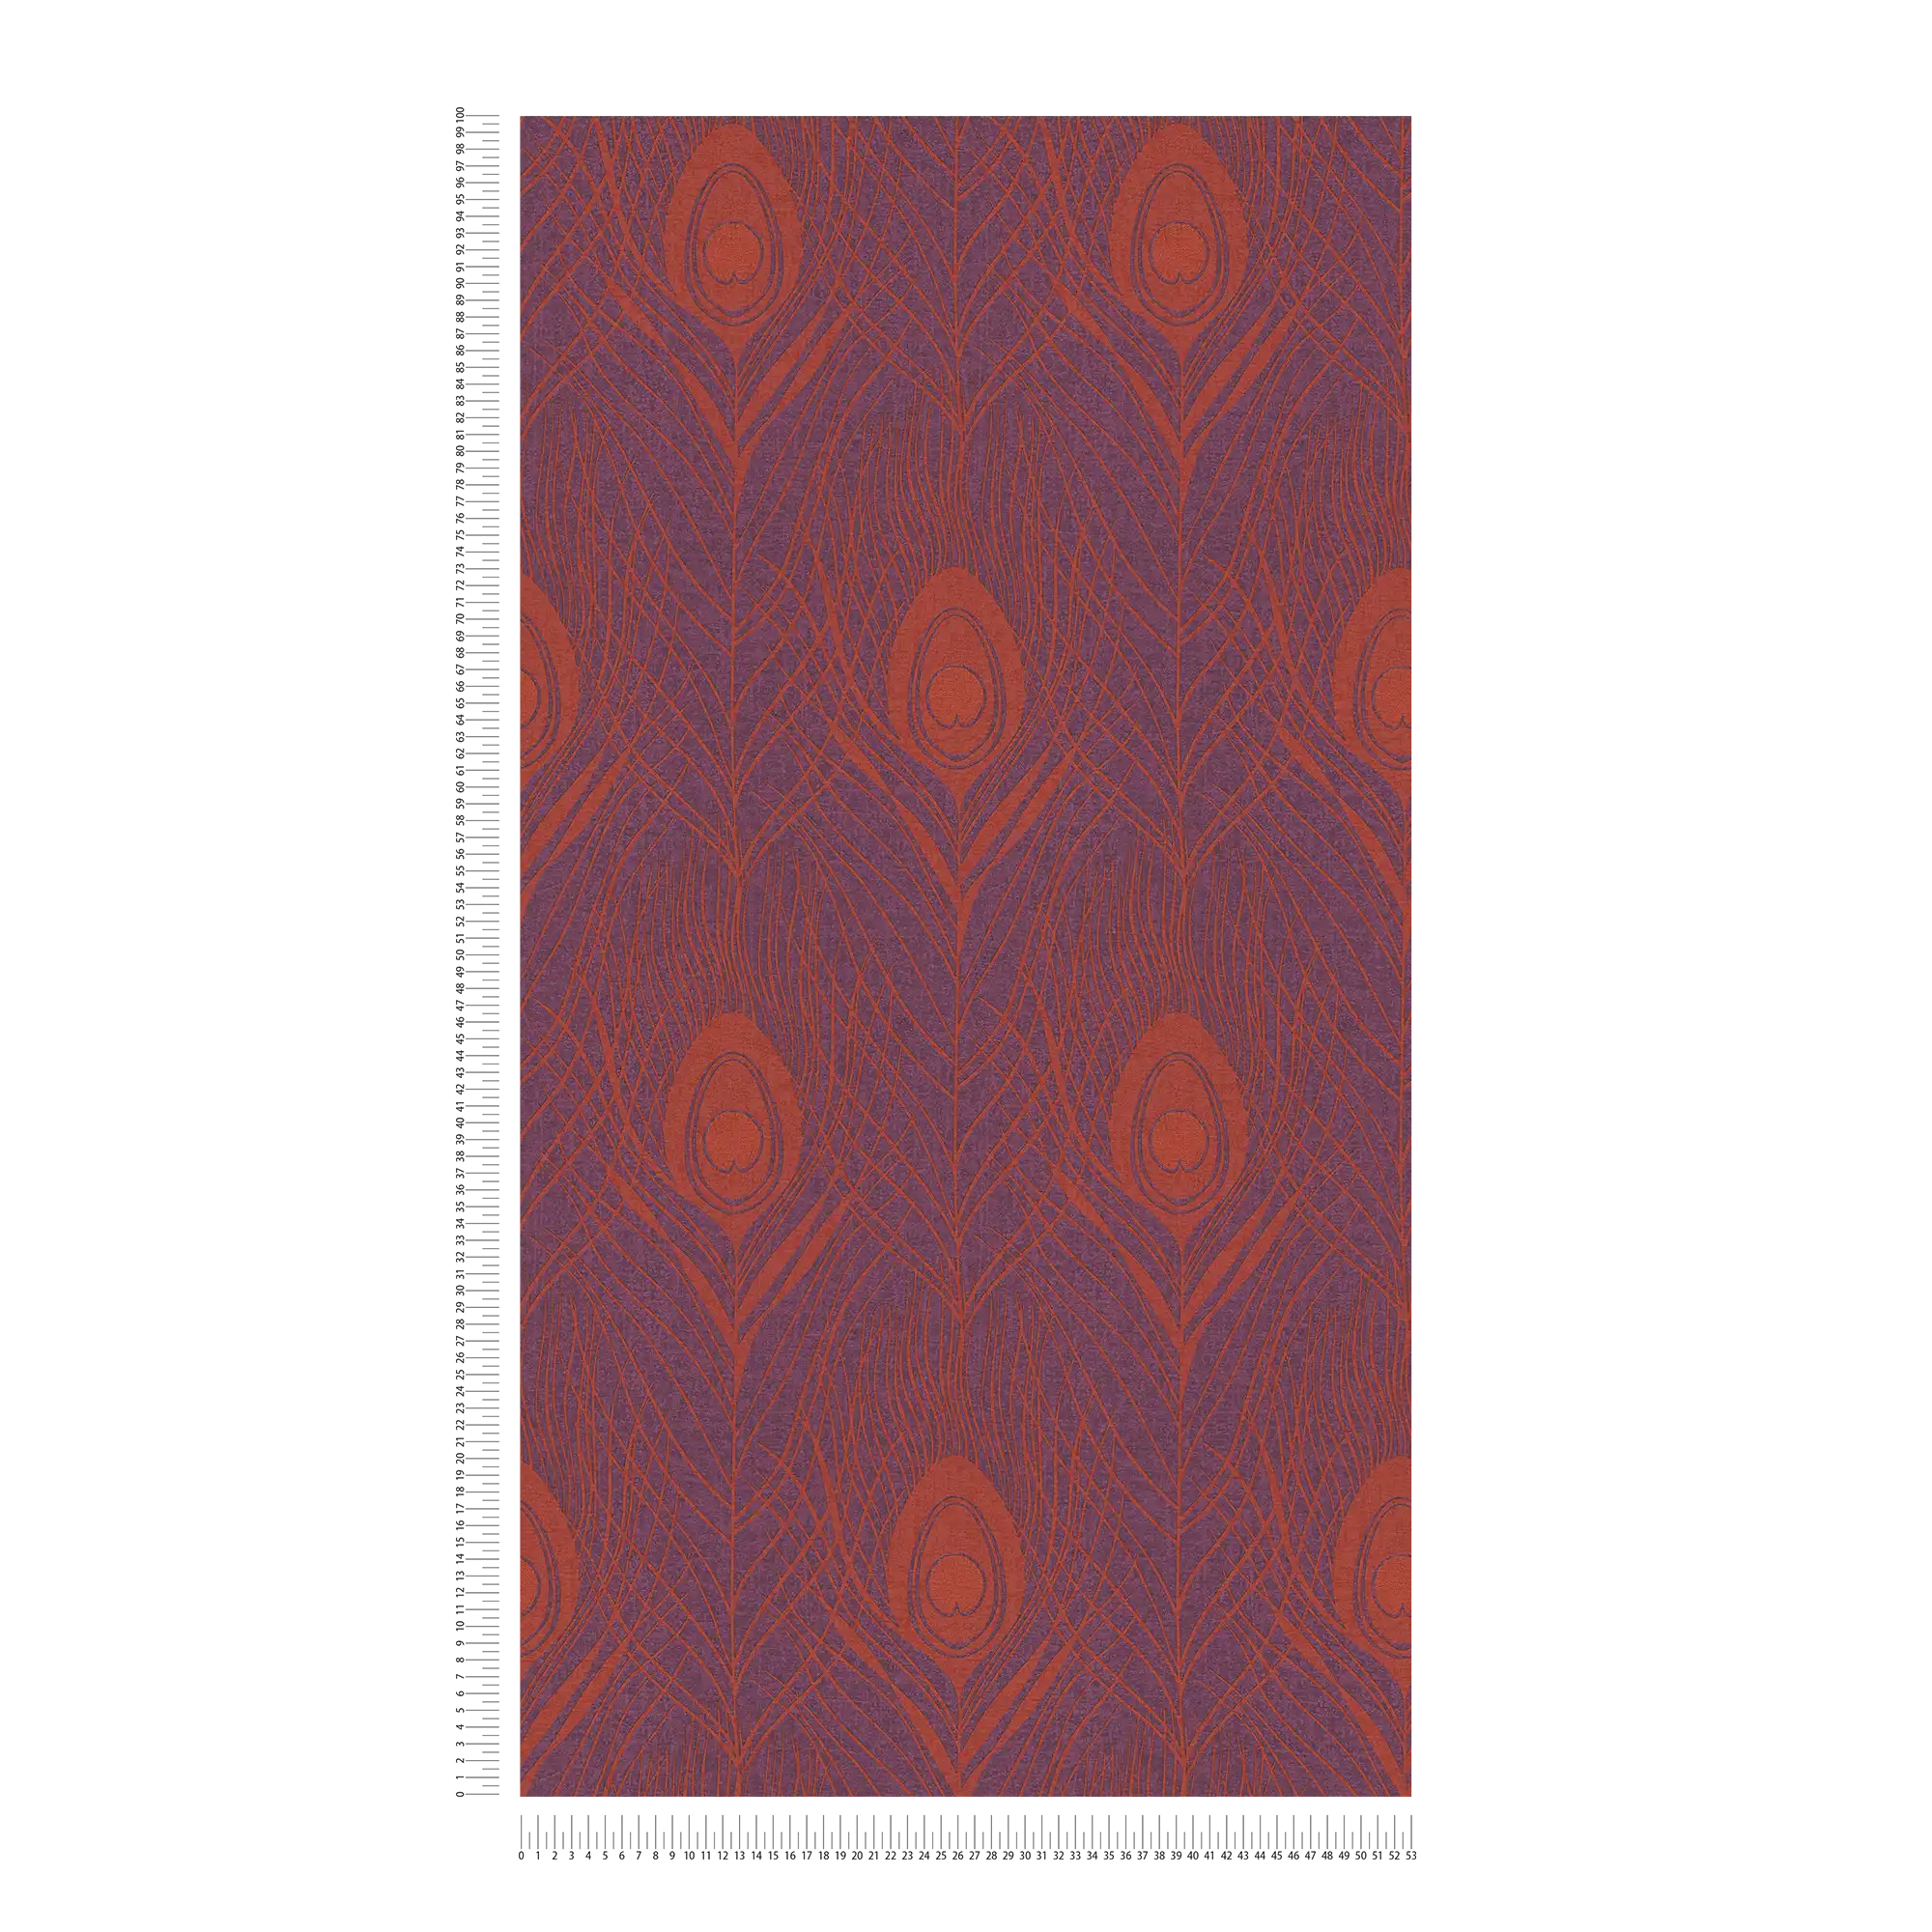             Magenta vliesbehang met pauwenveren - rood, paars, goud
        